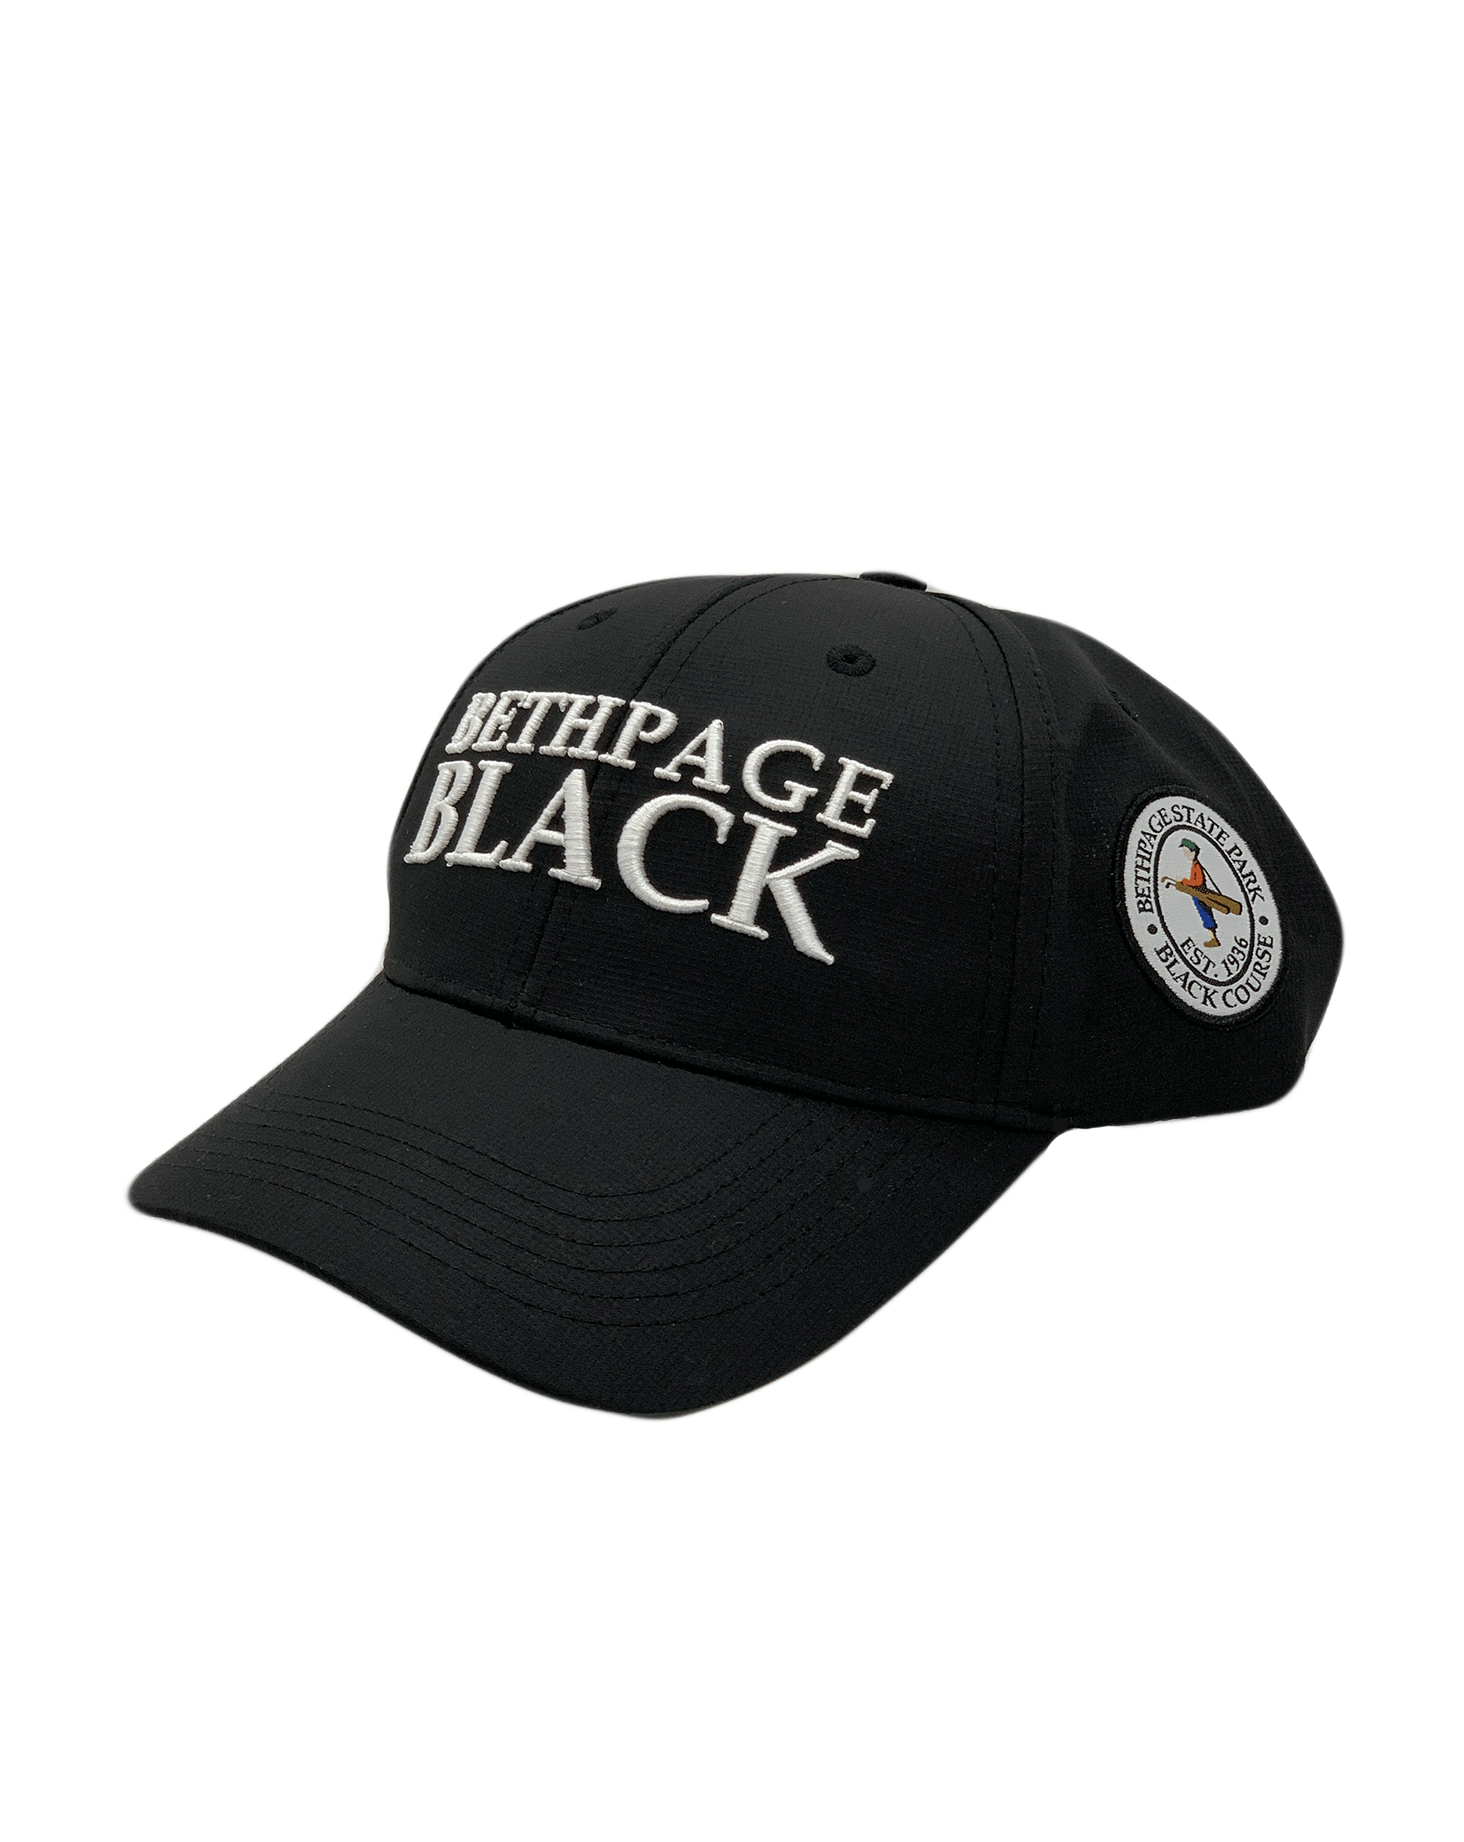 Bethpage Block Letter Hat Bethpage Black Online Shop